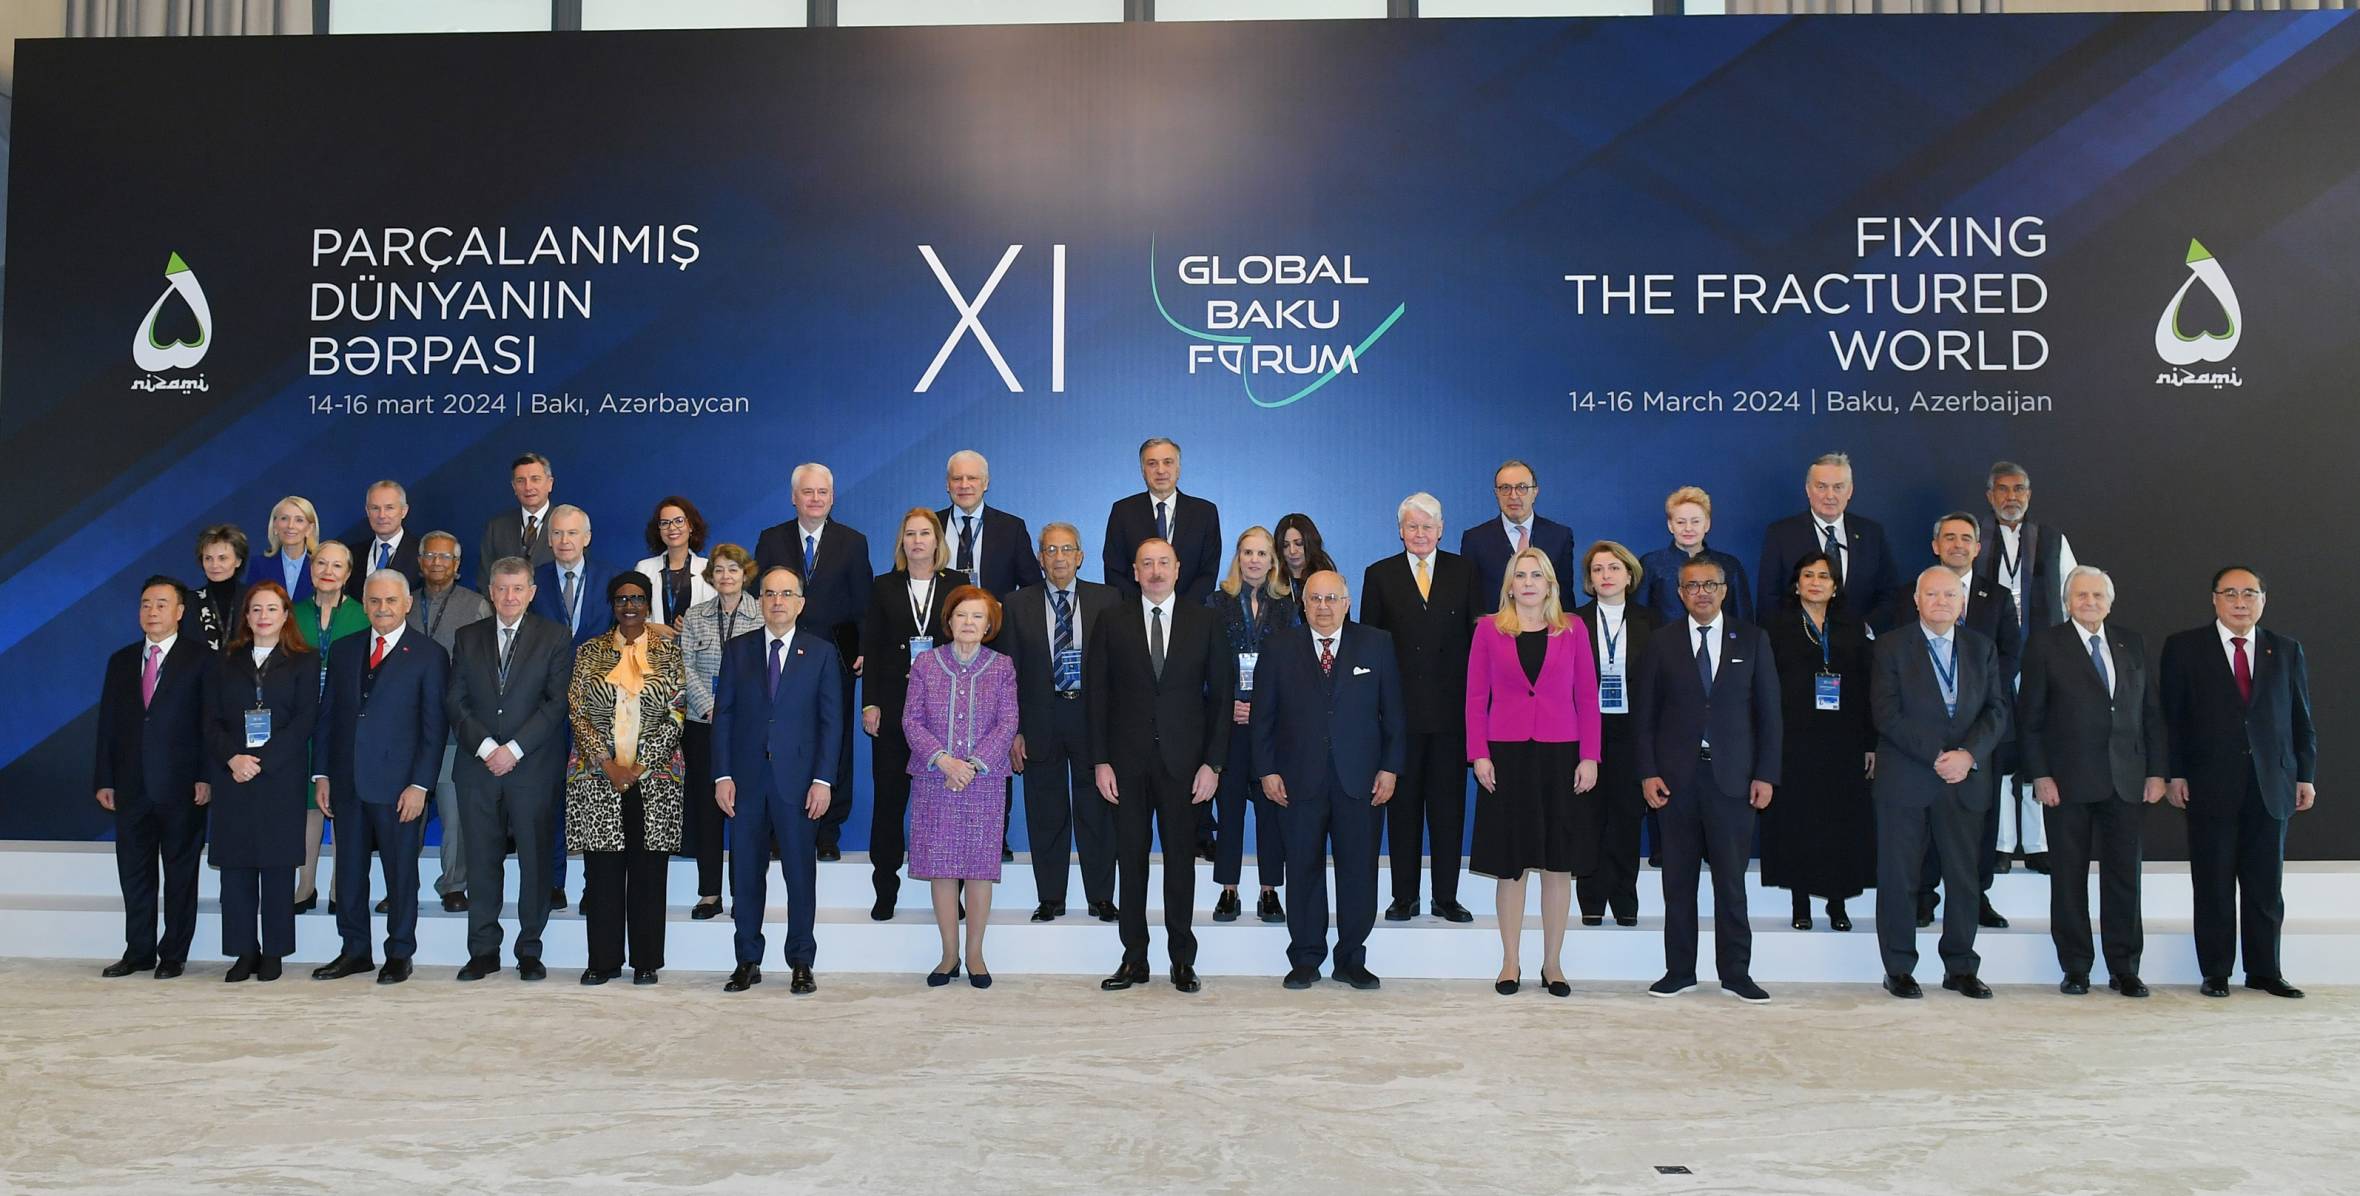 İlham Əliyev “Parçalanmış dünyanın bərpası” mövzusunda XI Qlobal Bakı Forumunun açılış mərasimində iştirak edib